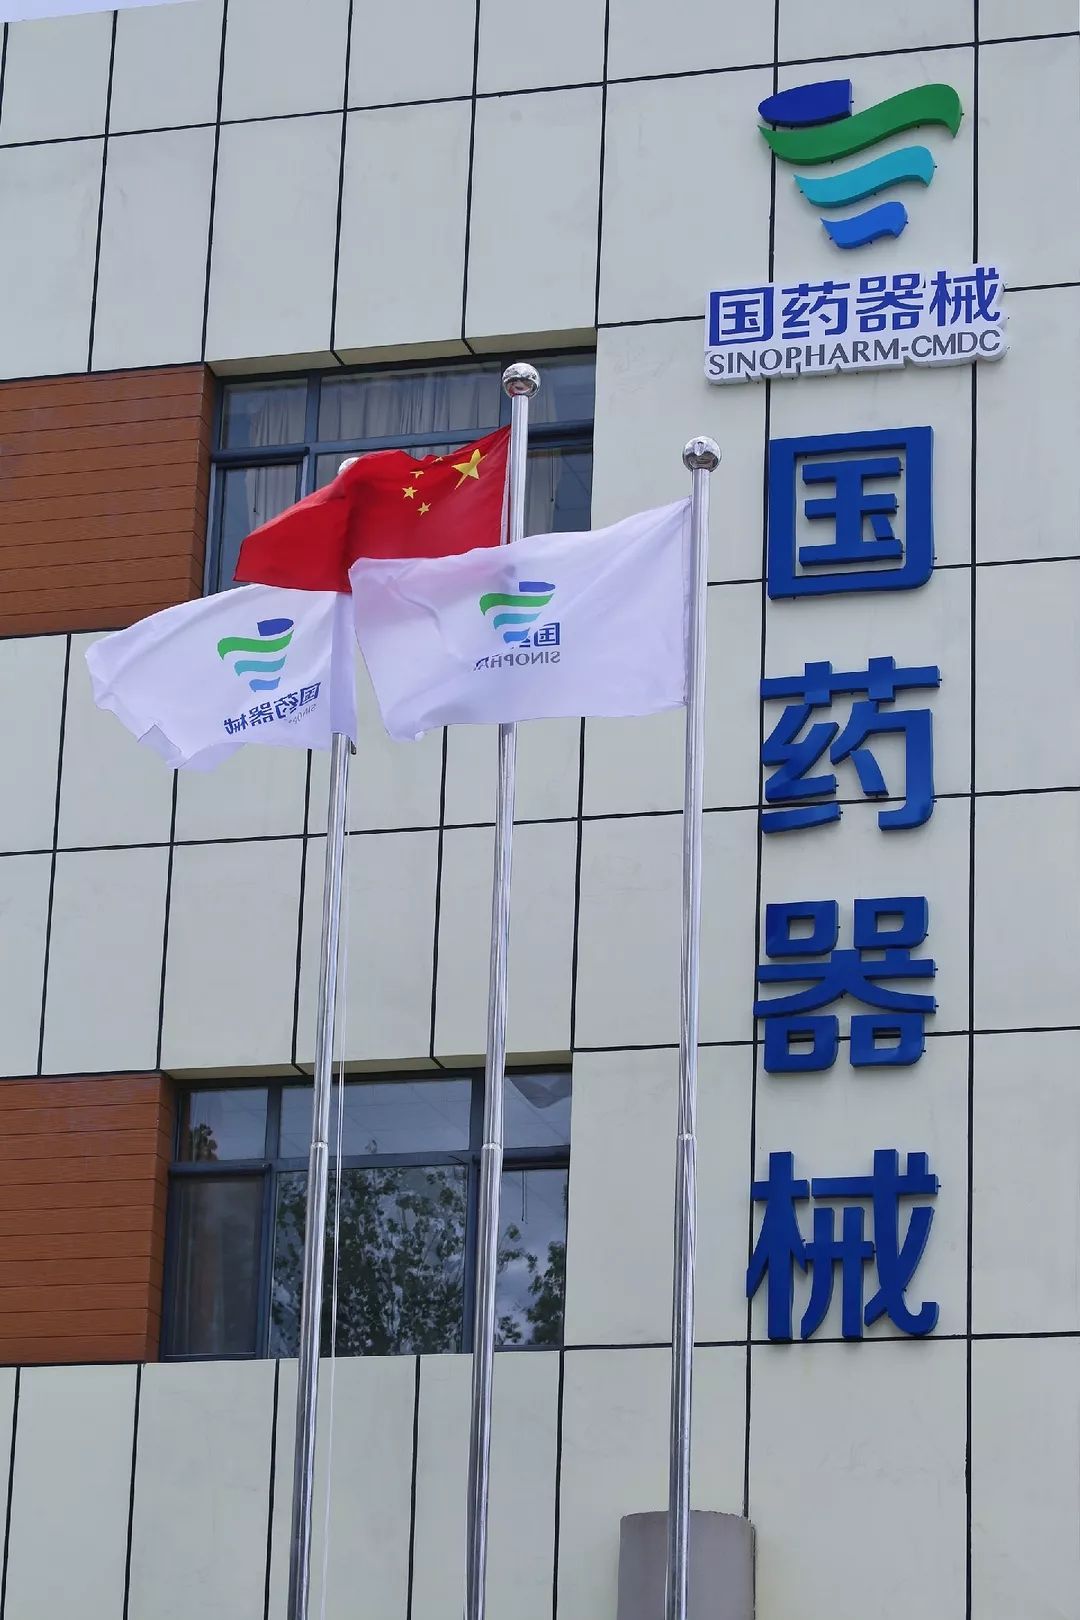 国药器械天津公司物流中心入驻北辰医药医疗器械产业园